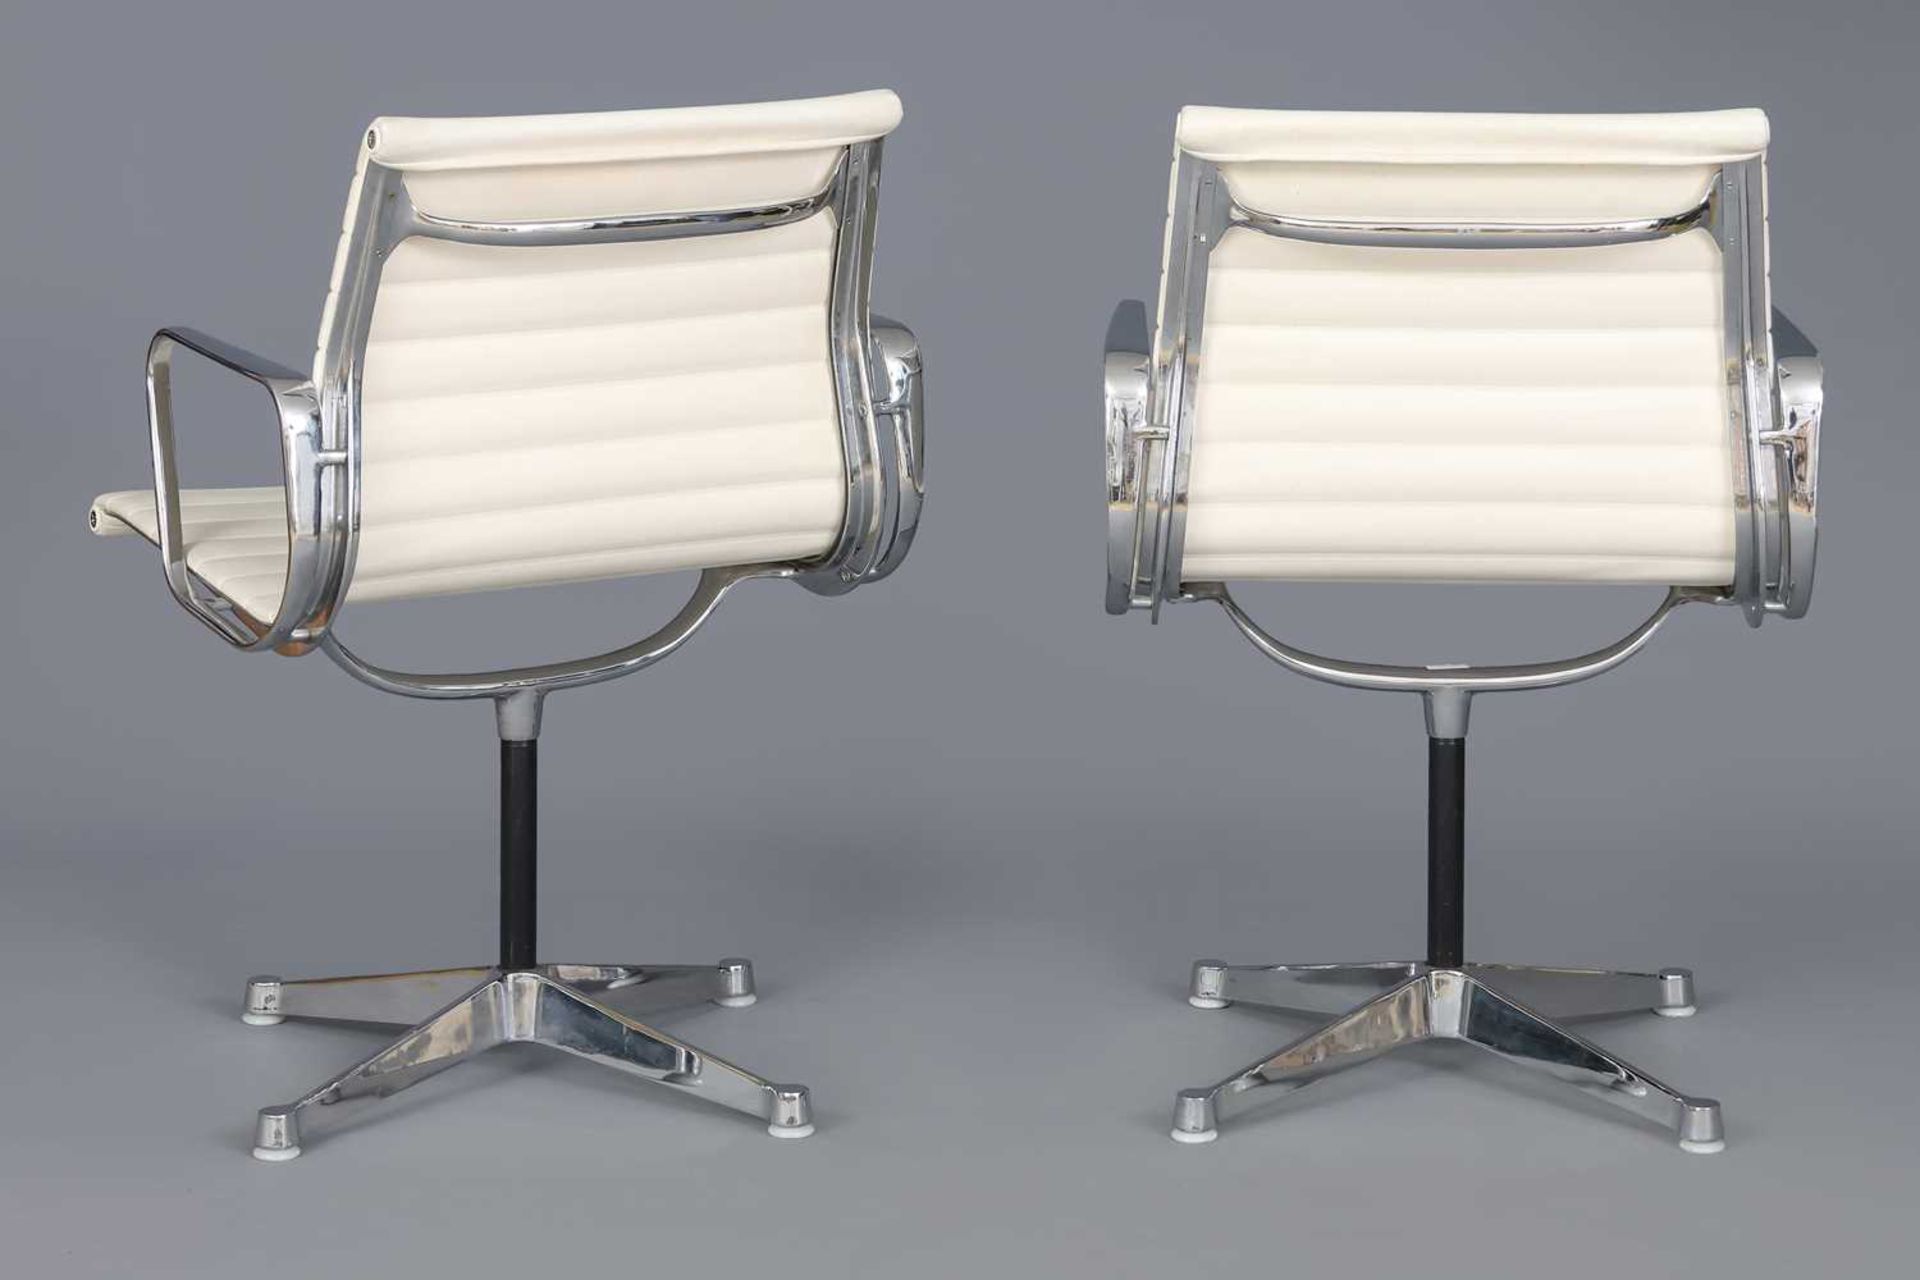 Paar HERMAN MILLER Alu-Chairs - Image 2 of 3